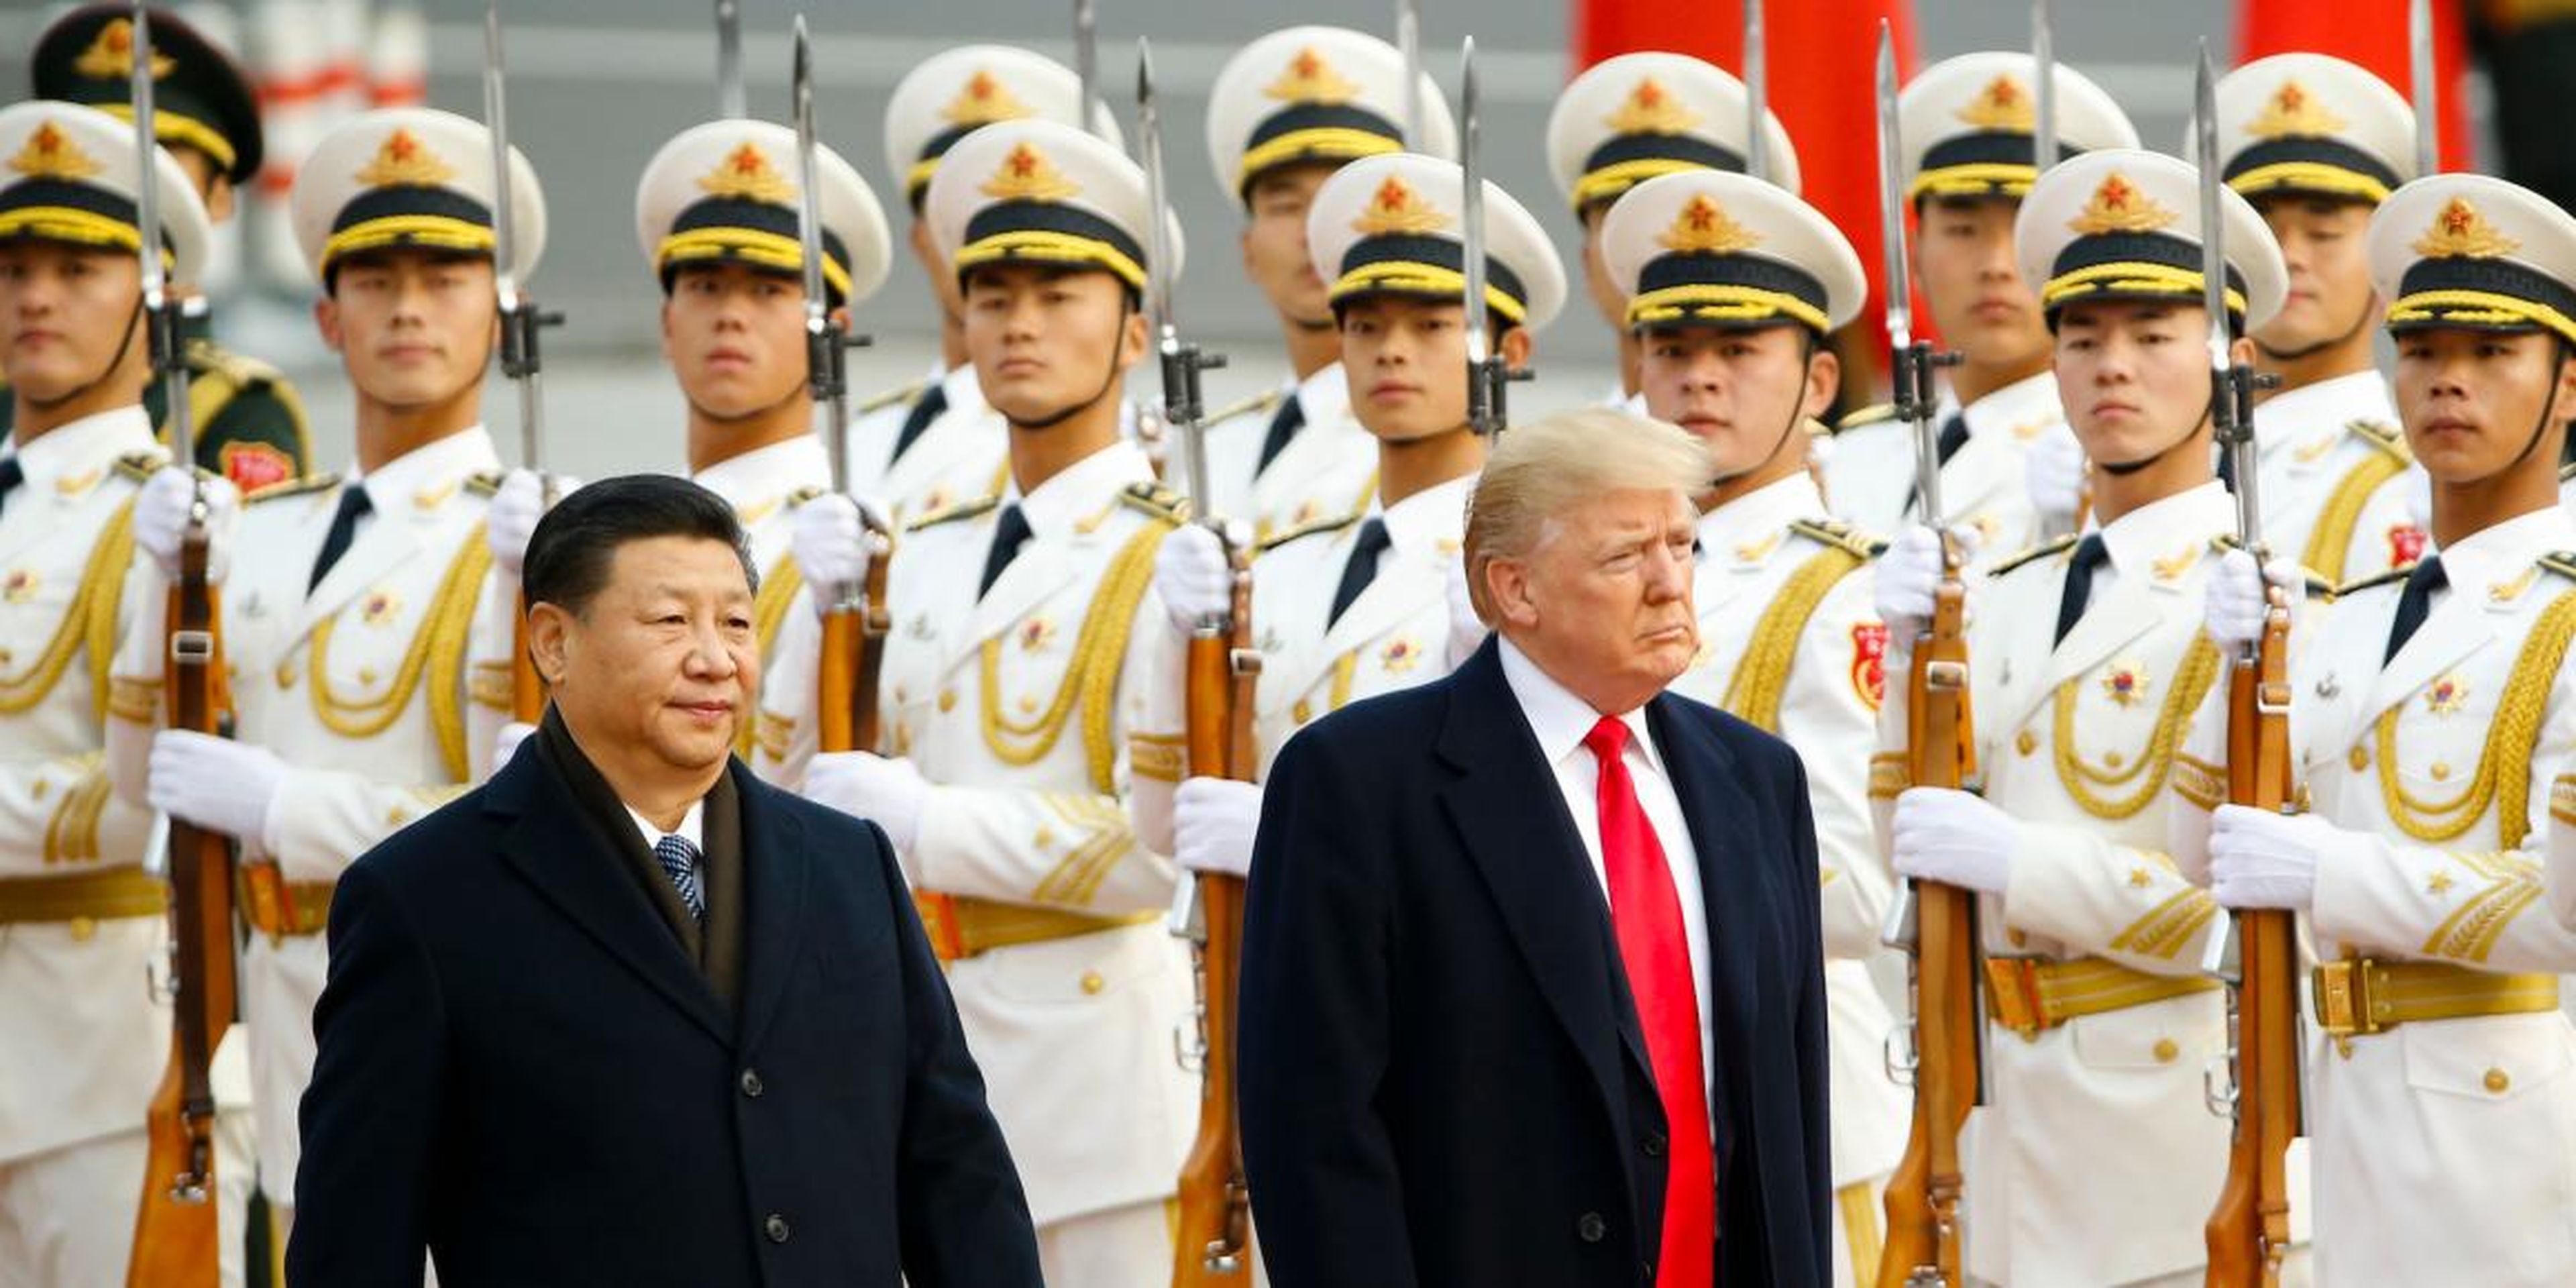 la guerra comercial de Trump comienza con aranceles sobre bienes chinos por valor de 34 mil millones de euros